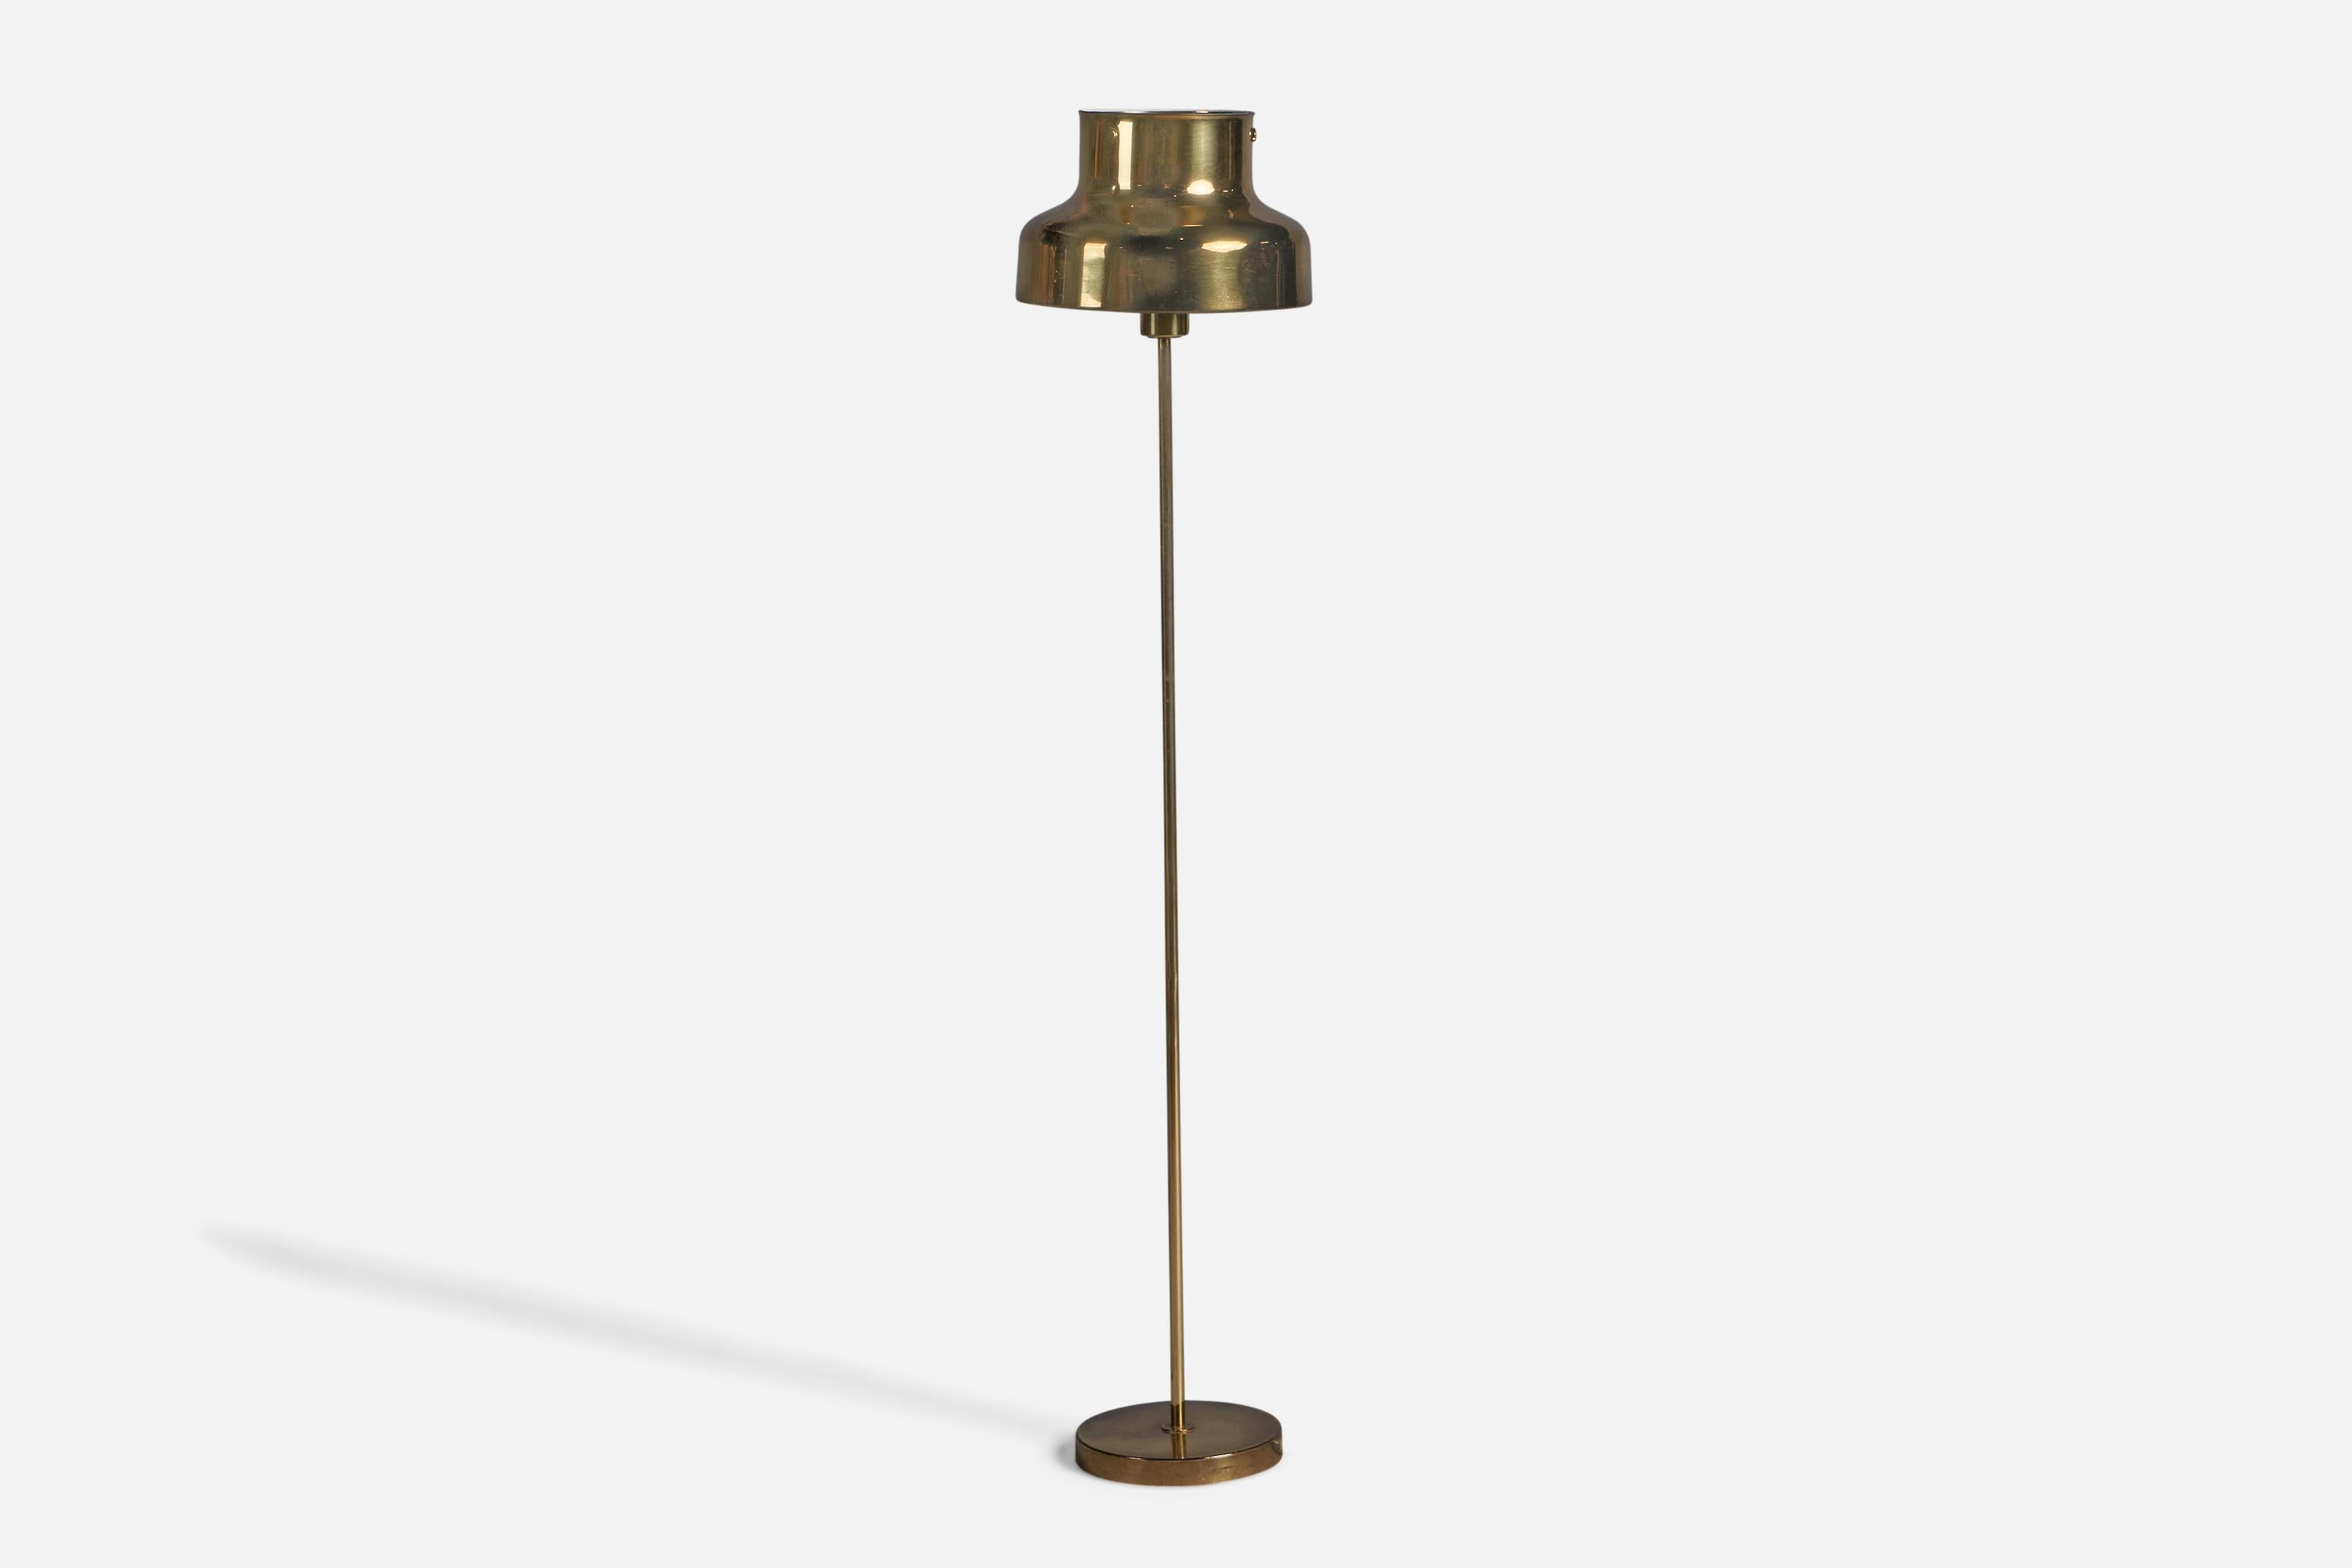 Stehlampe aus Messing, entworfen von Anders Pehrsson und hergestellt von Atelje Lyktan, Schweden, ca. 1960er Jahre.
Gesamtabmessungen (Zoll): 47,5